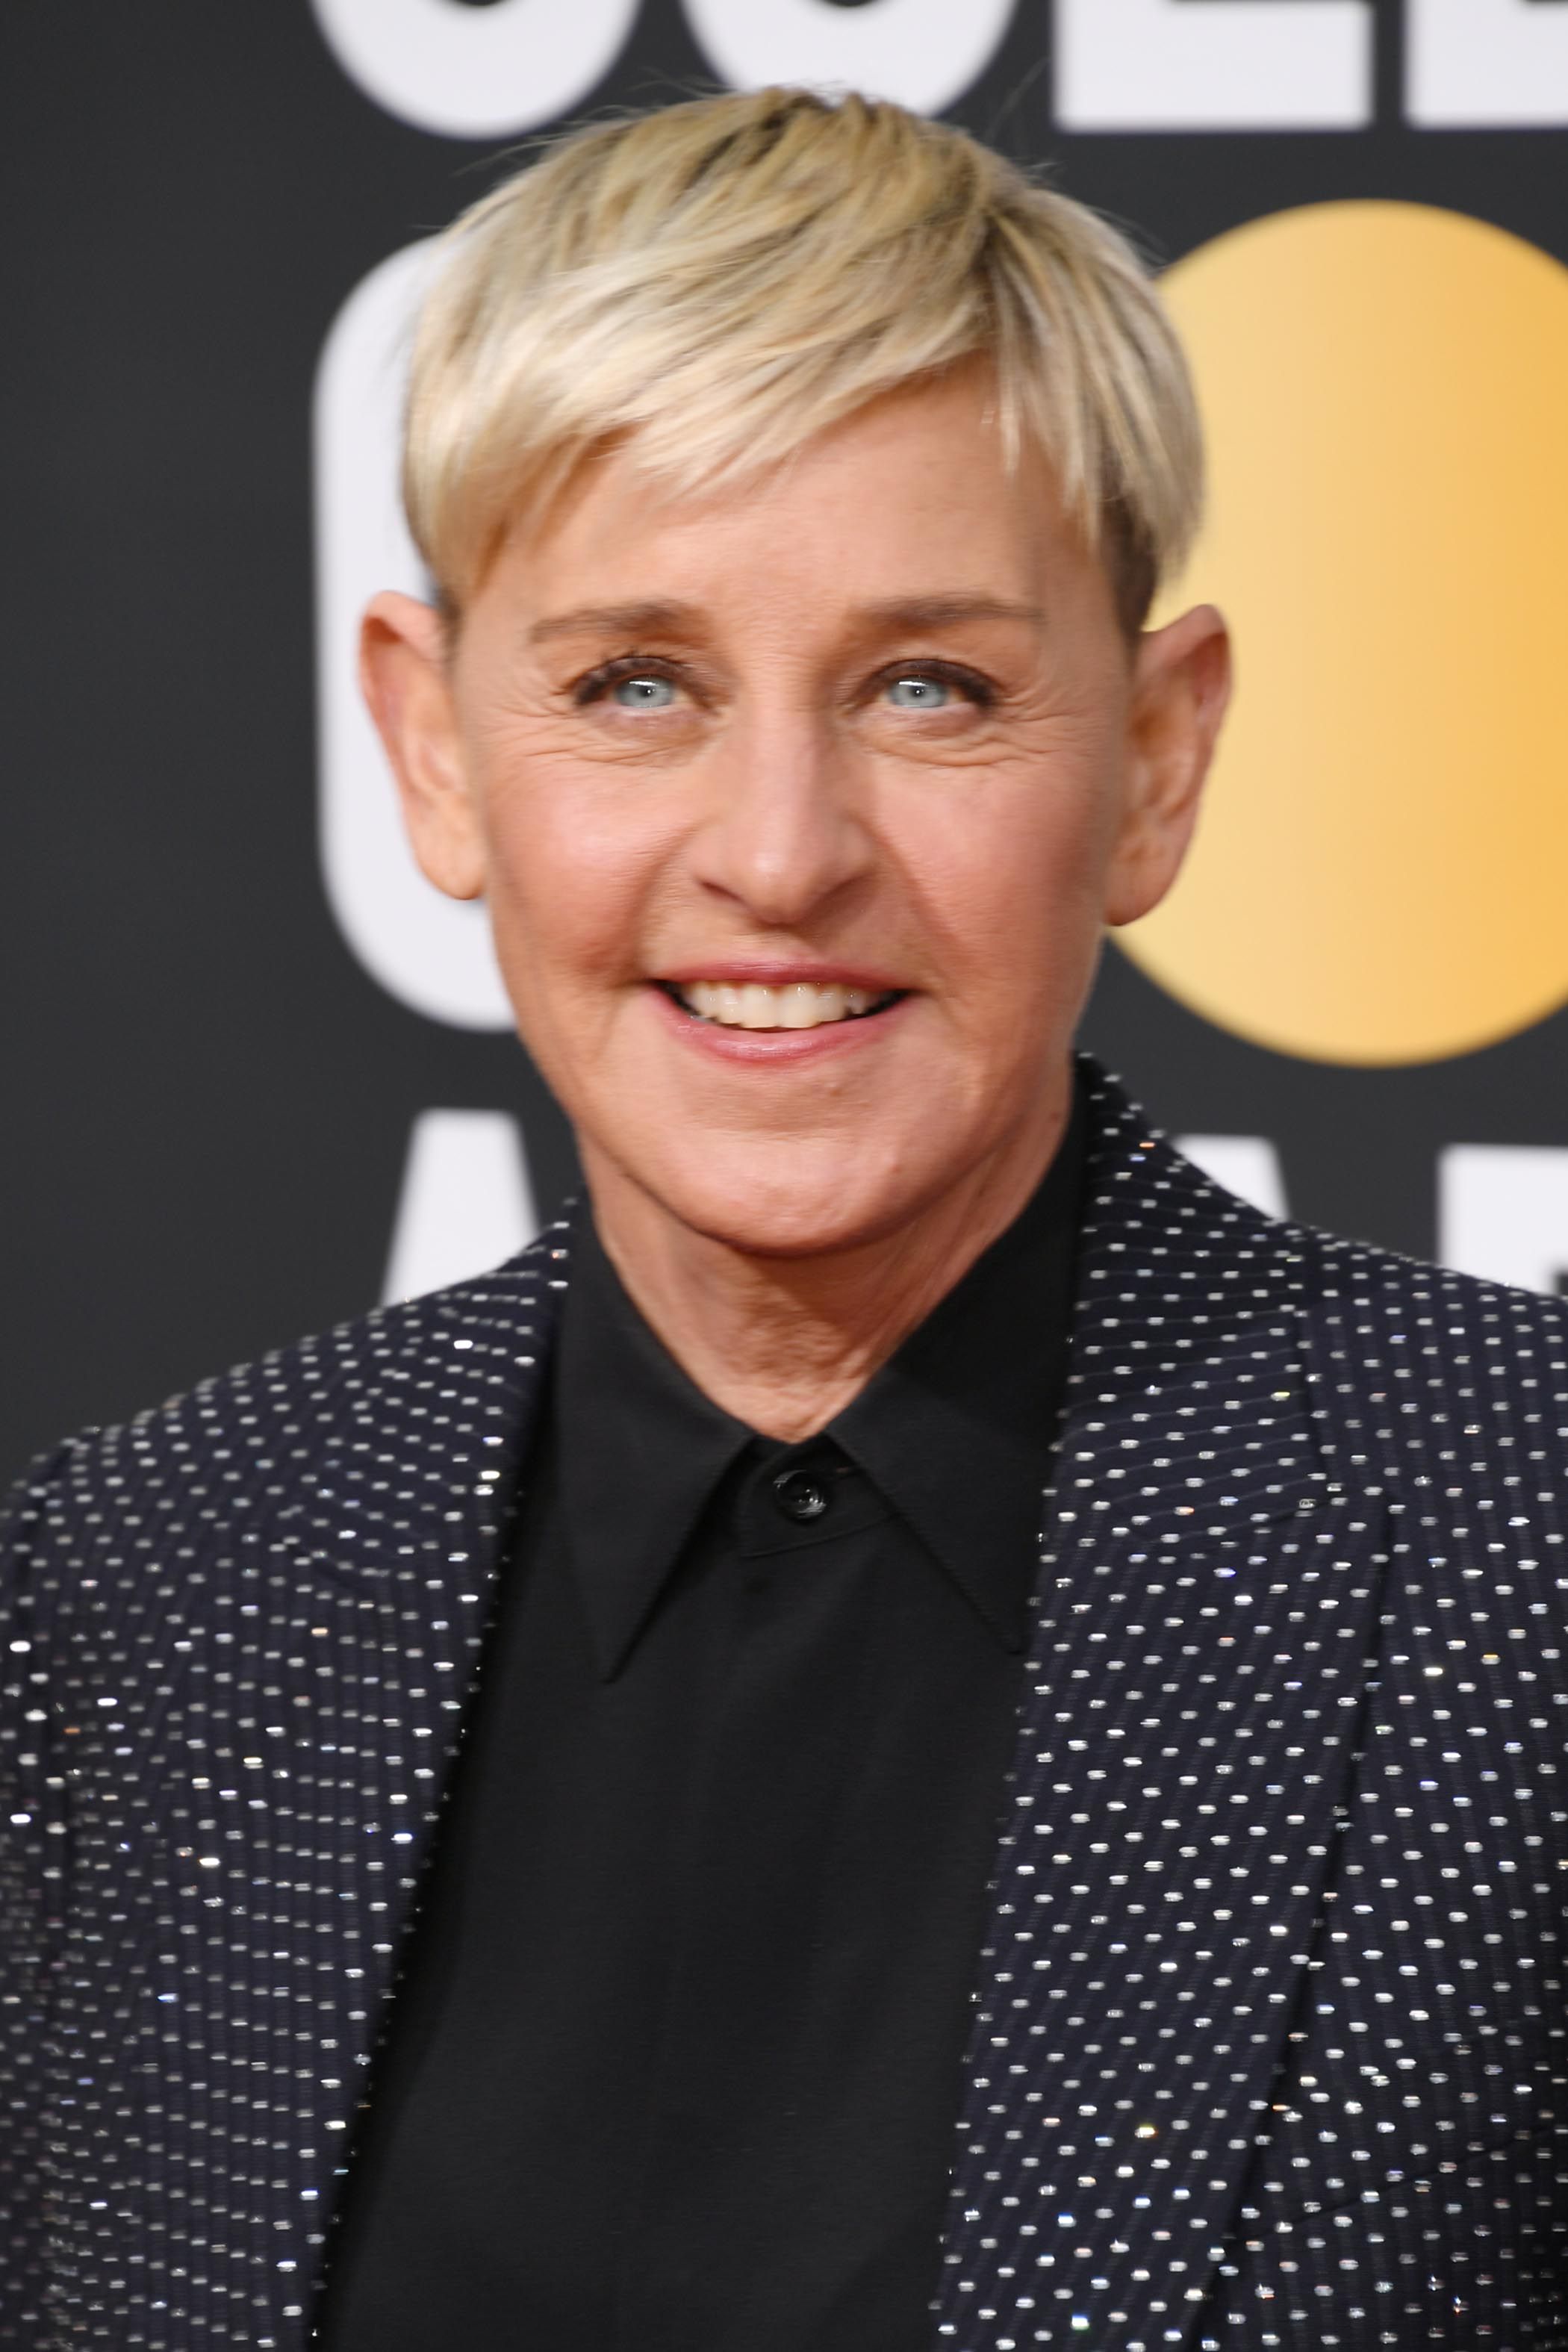 Where is Ellen DeGeneres now?